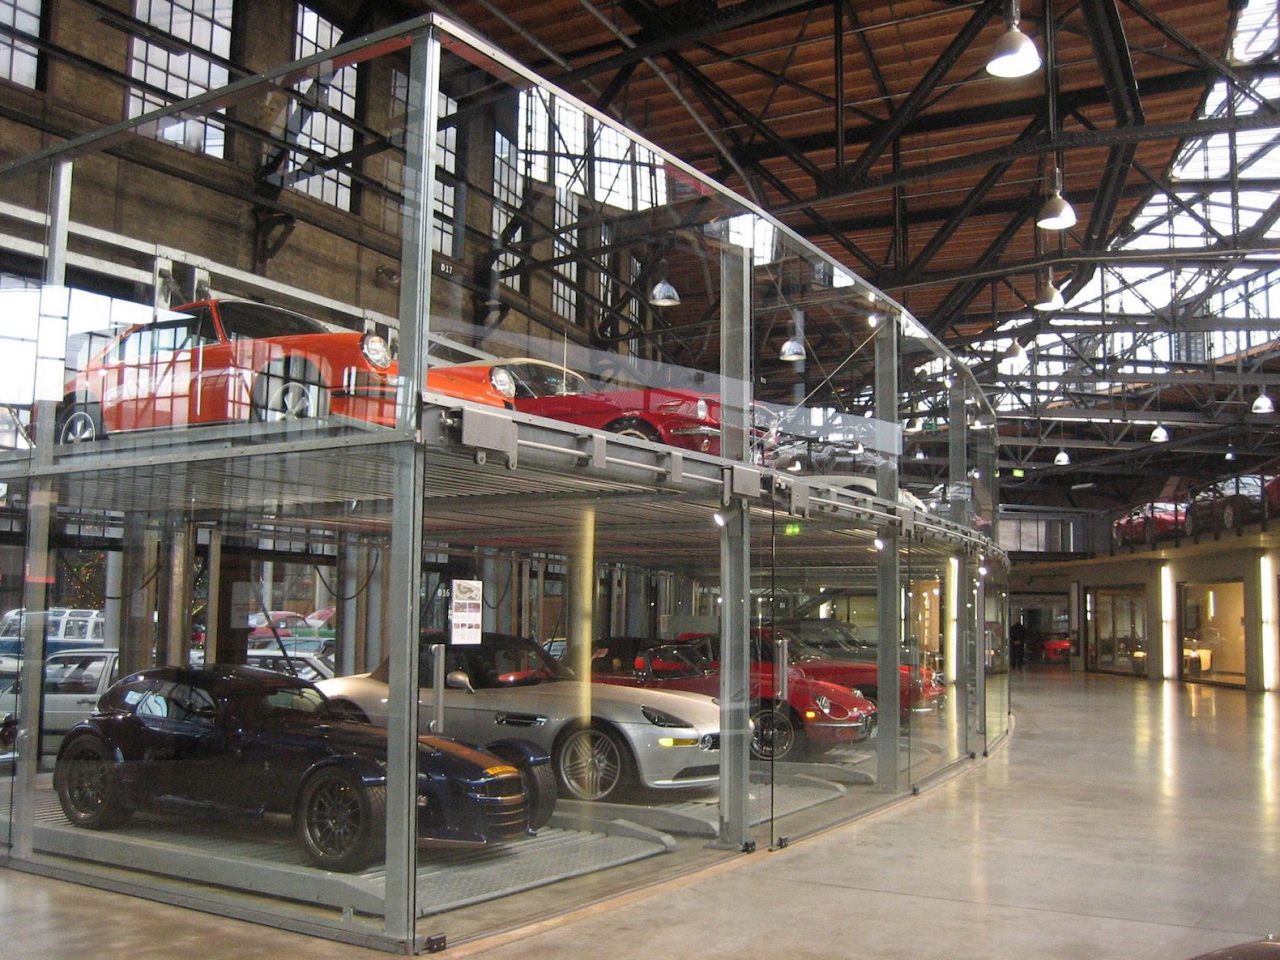 Cars in Classic Remise museum in Dusseldorf